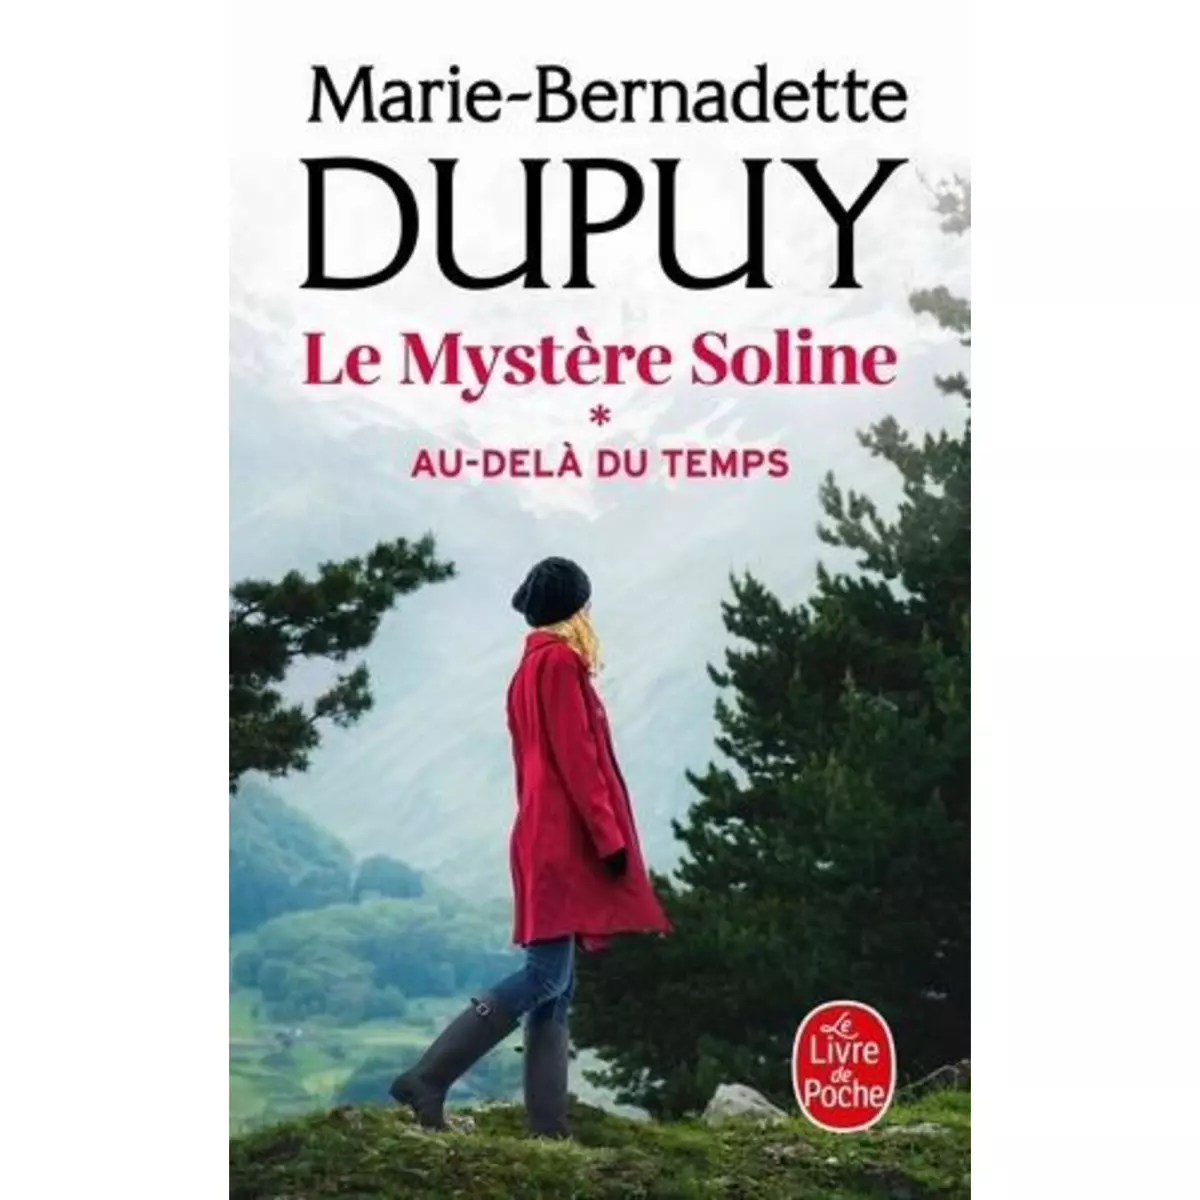  LE MYSTERE SOLINE TOME 1 : AU-DELA DU TEMPS, Dupuy Marie-Bernadette